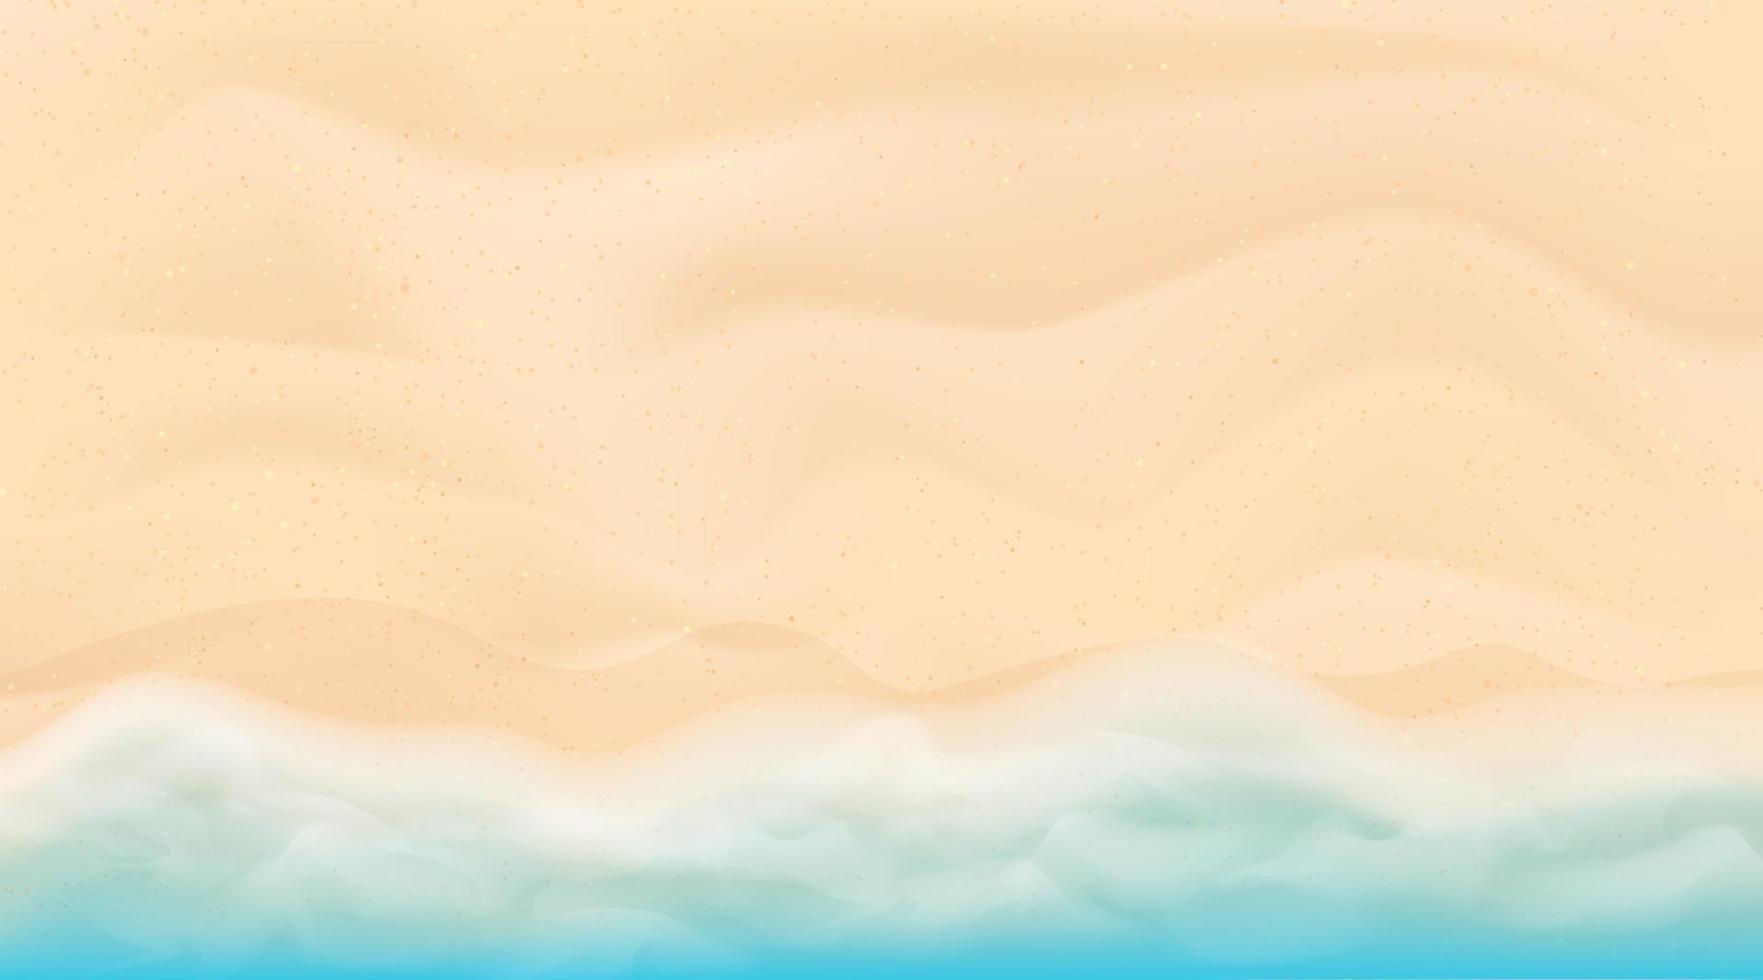 Blau und hell Türkis Meer, Weiß Sand. tropisch Strand Hintergrund. oben Aussicht Vektor Illustration. Platz zum Ihre Text. Design zum Poster, Flyer, Einladung, Karte.